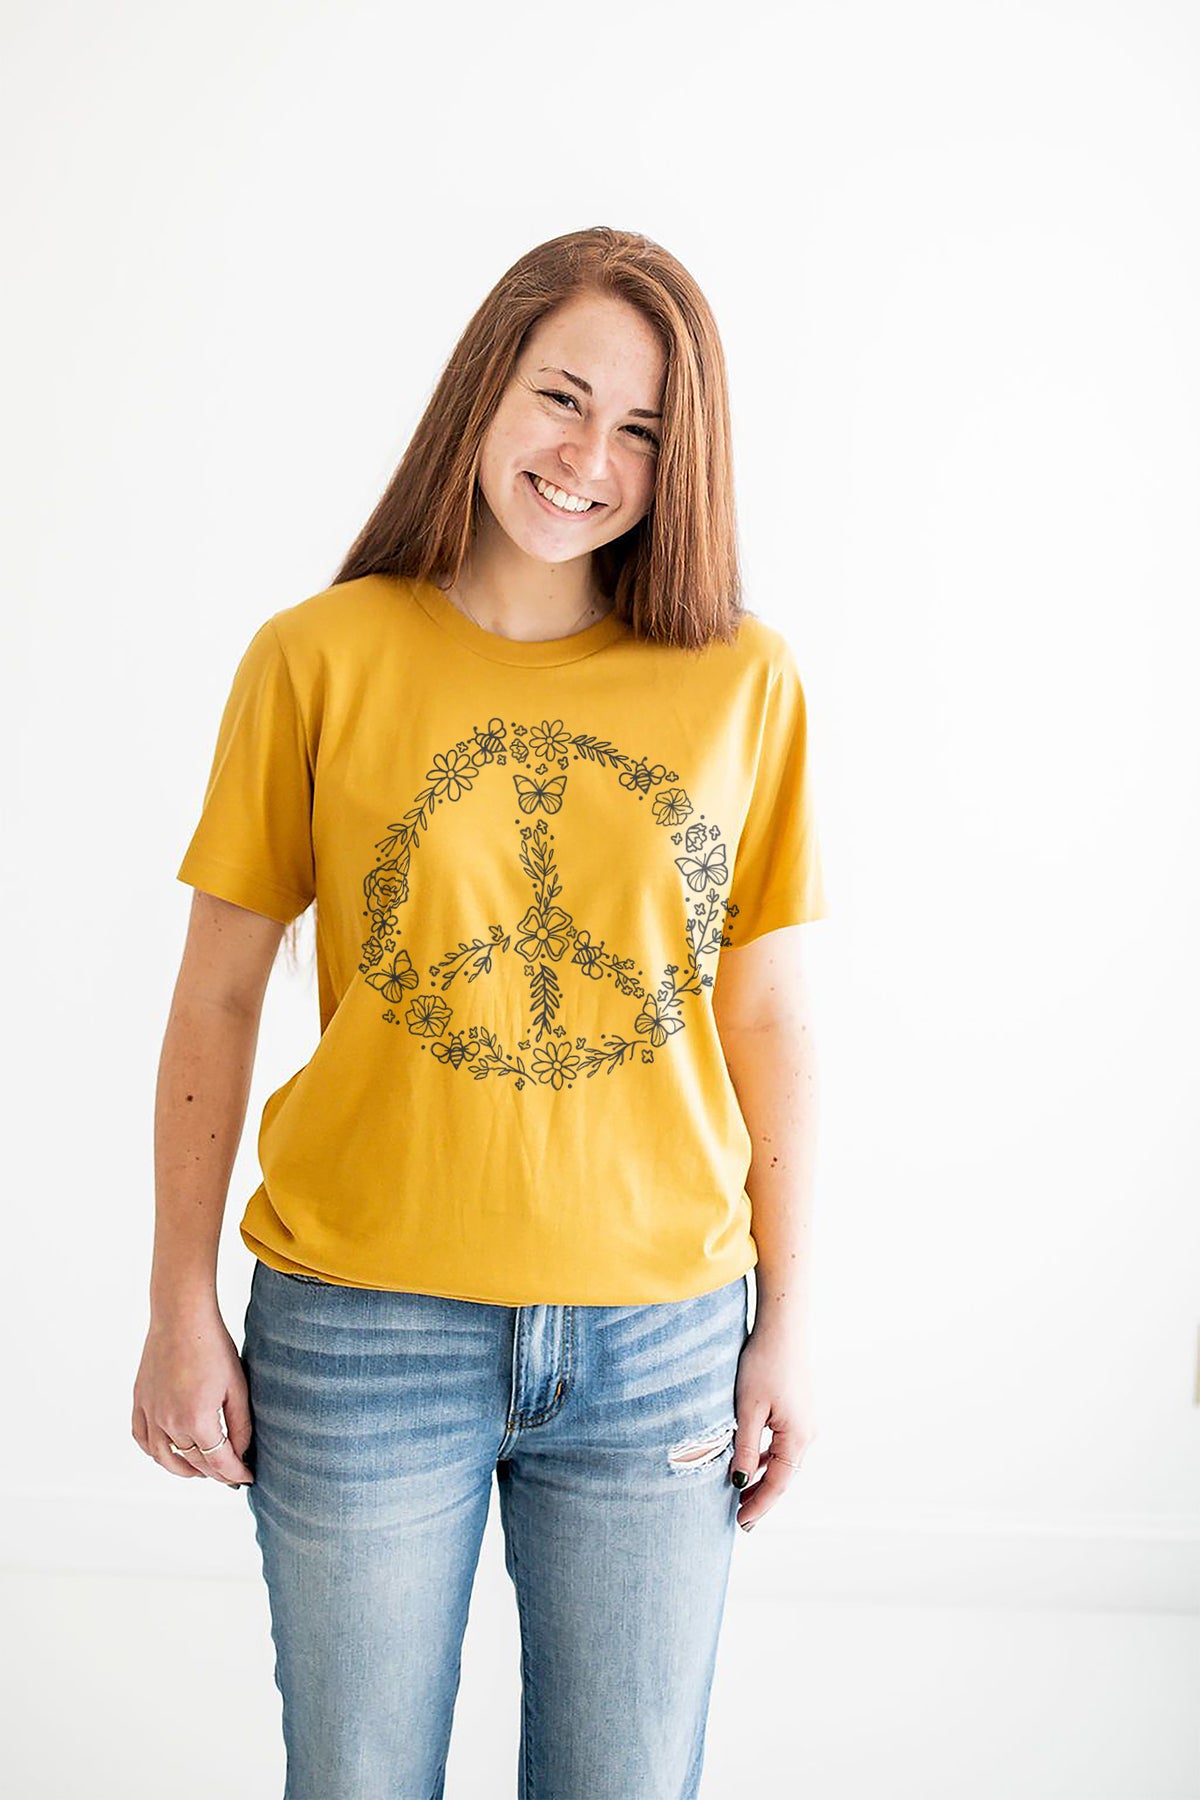 Pollinator Peace Sign Shirt